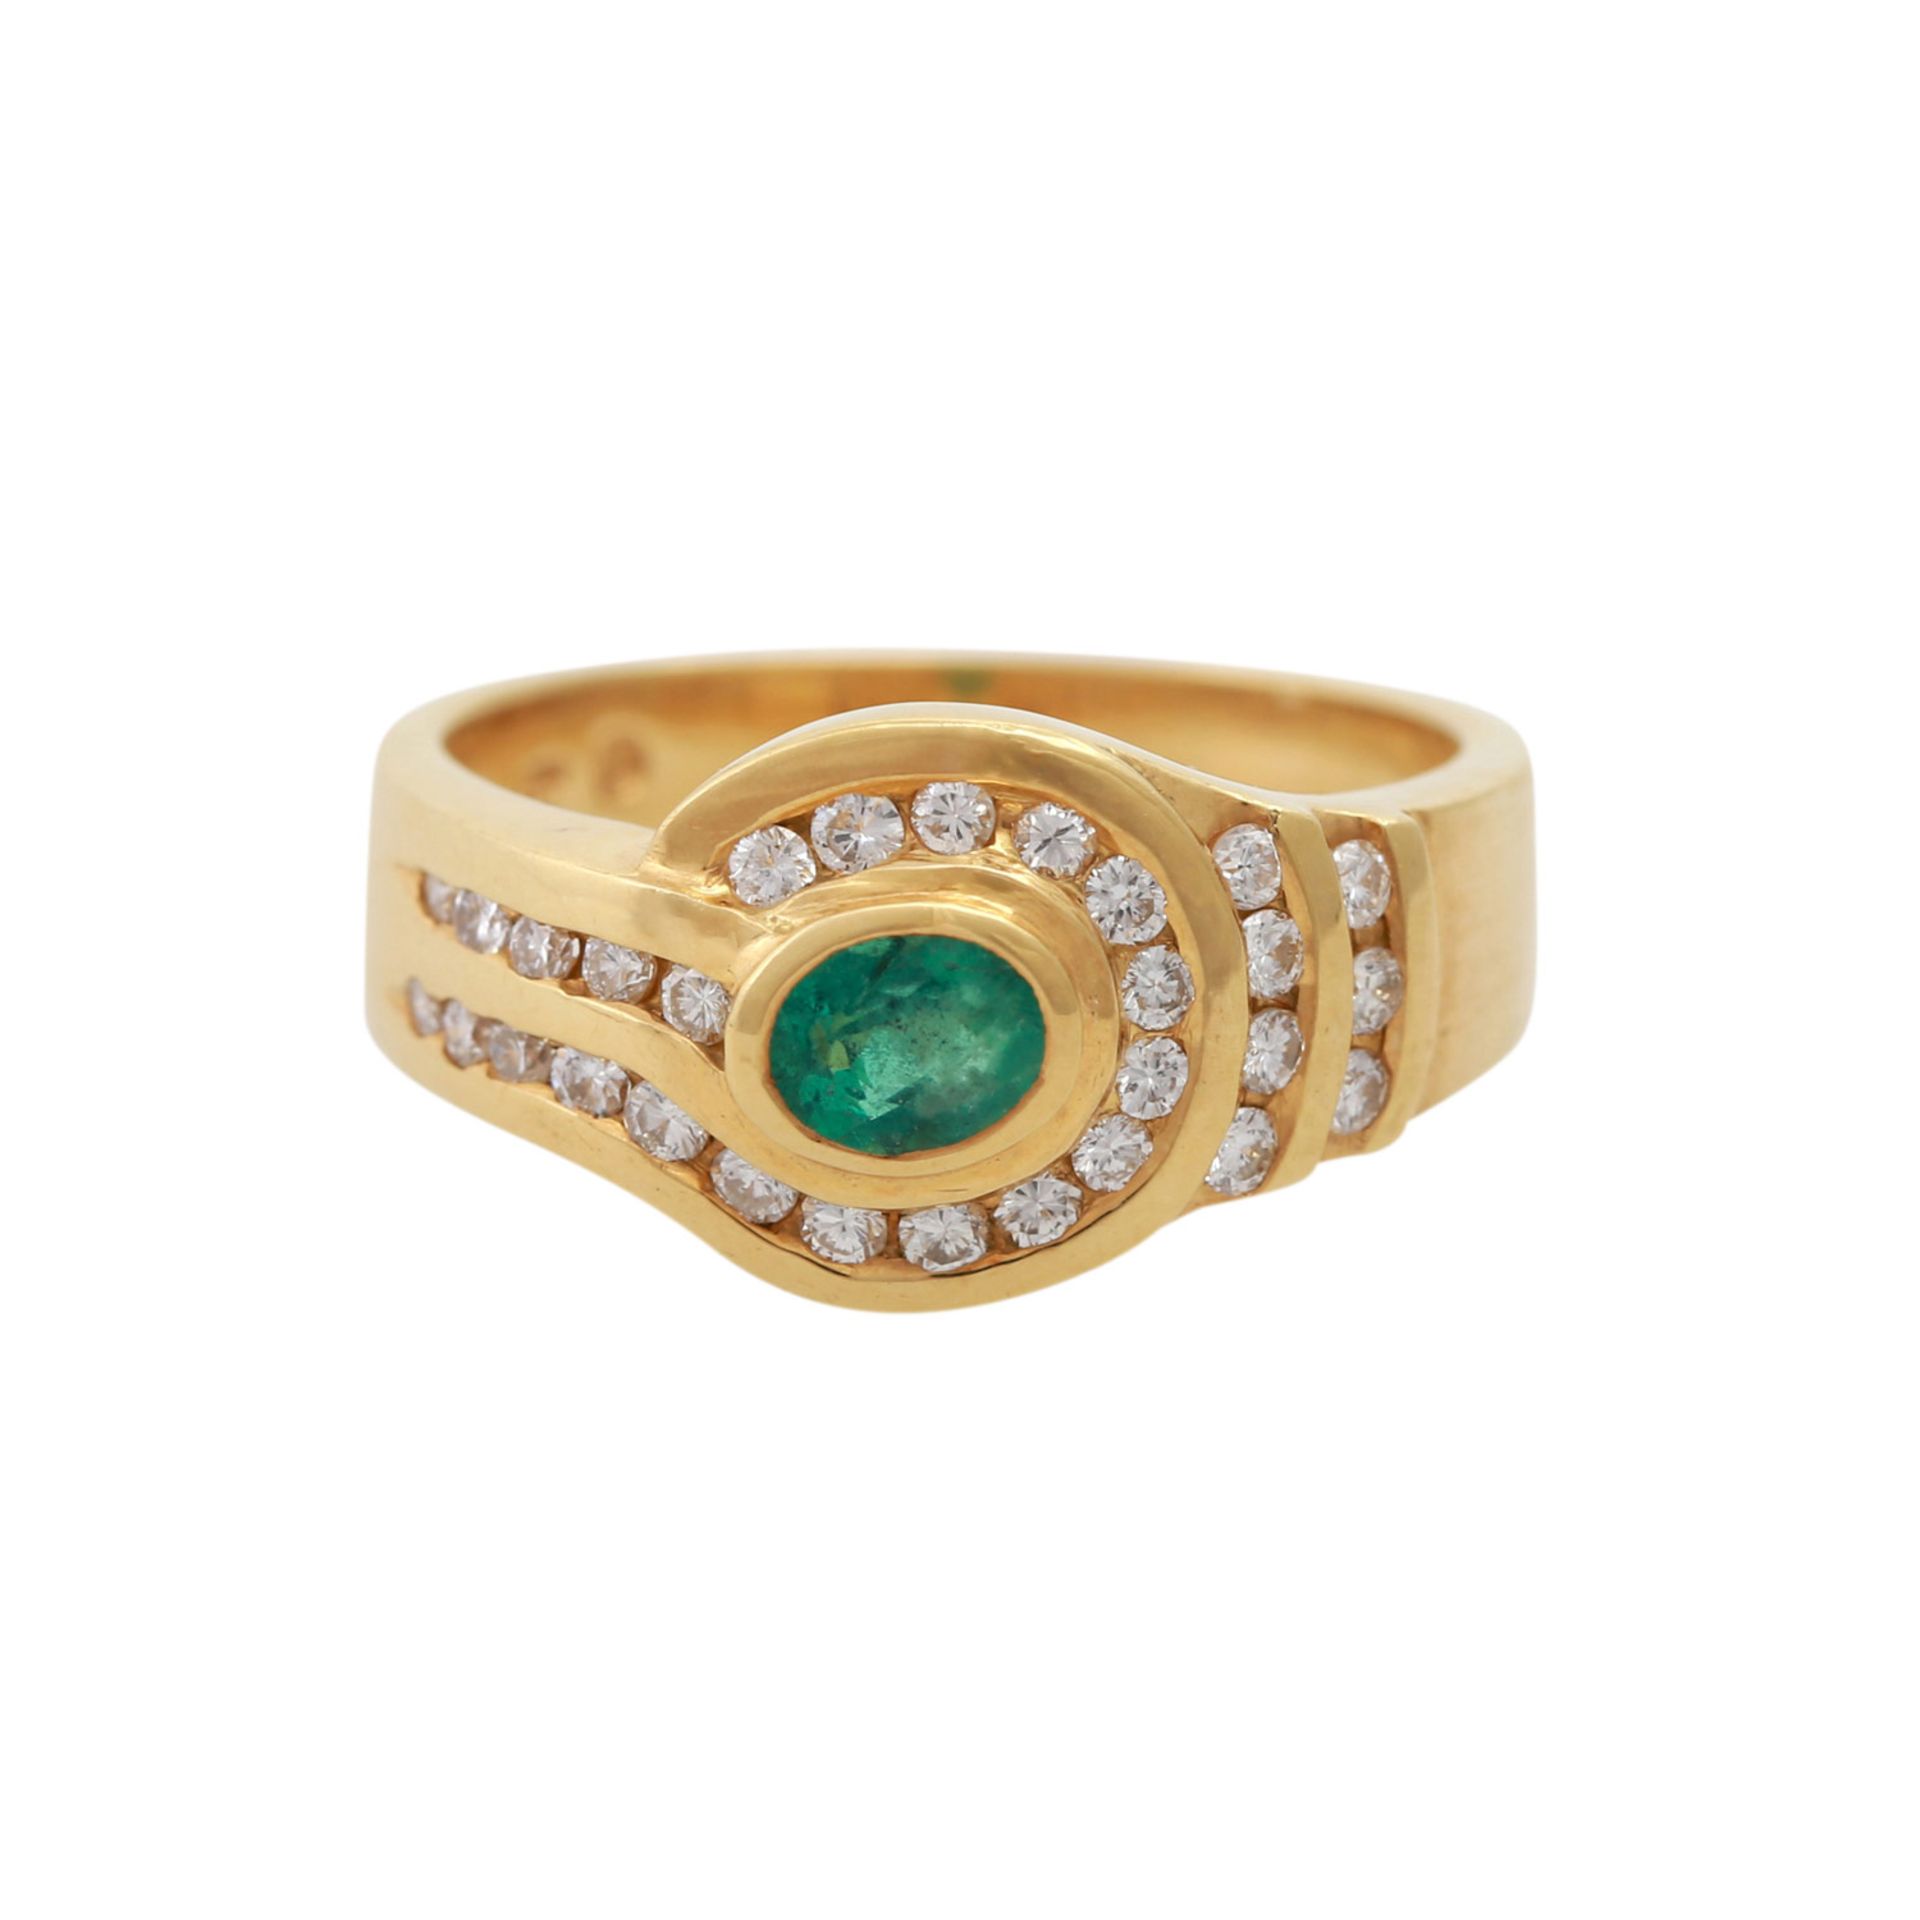 Damenring besetzt mit 1 ovalfac. Smaragd sowie kl. Brillanten zus. ca. 0,38 ct, WG 18K. Ringgröße